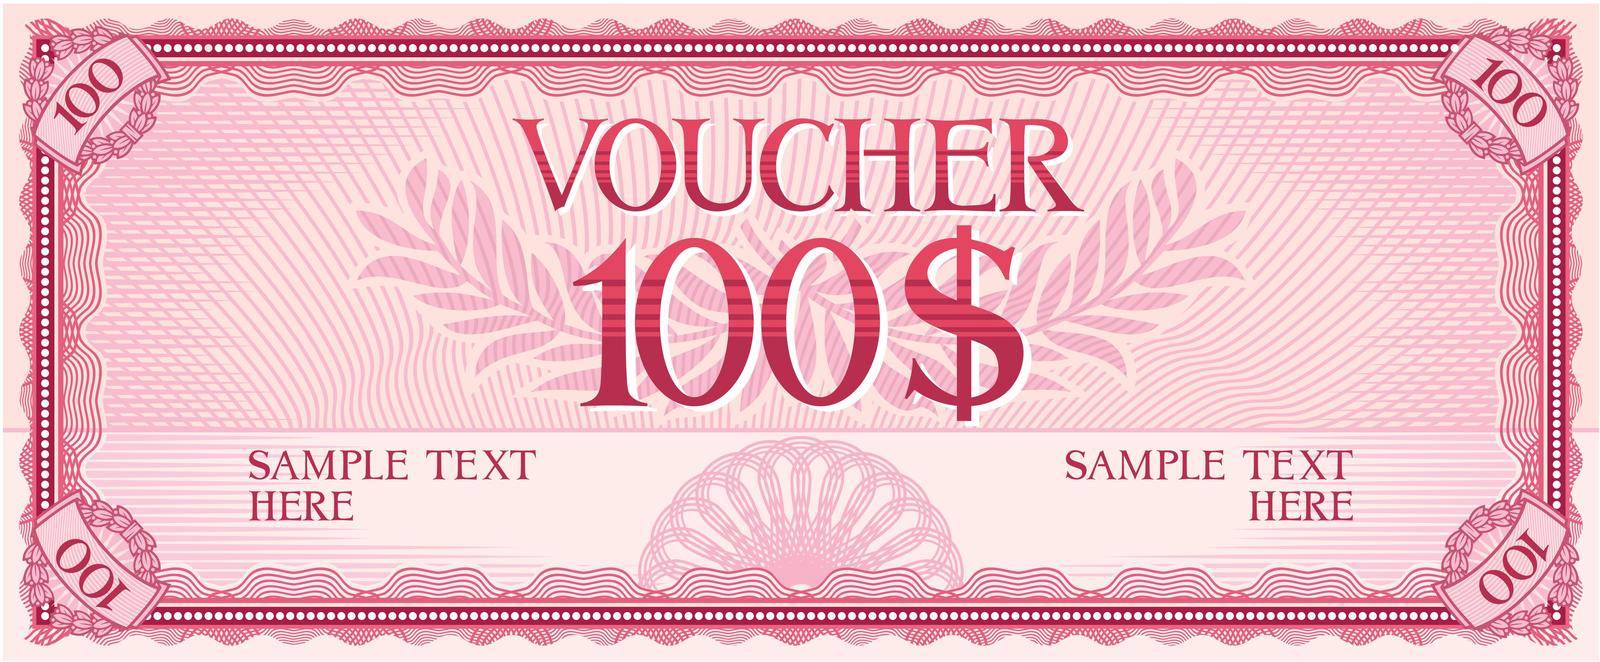 Voucher design - hundred dollars by TribaliumArt